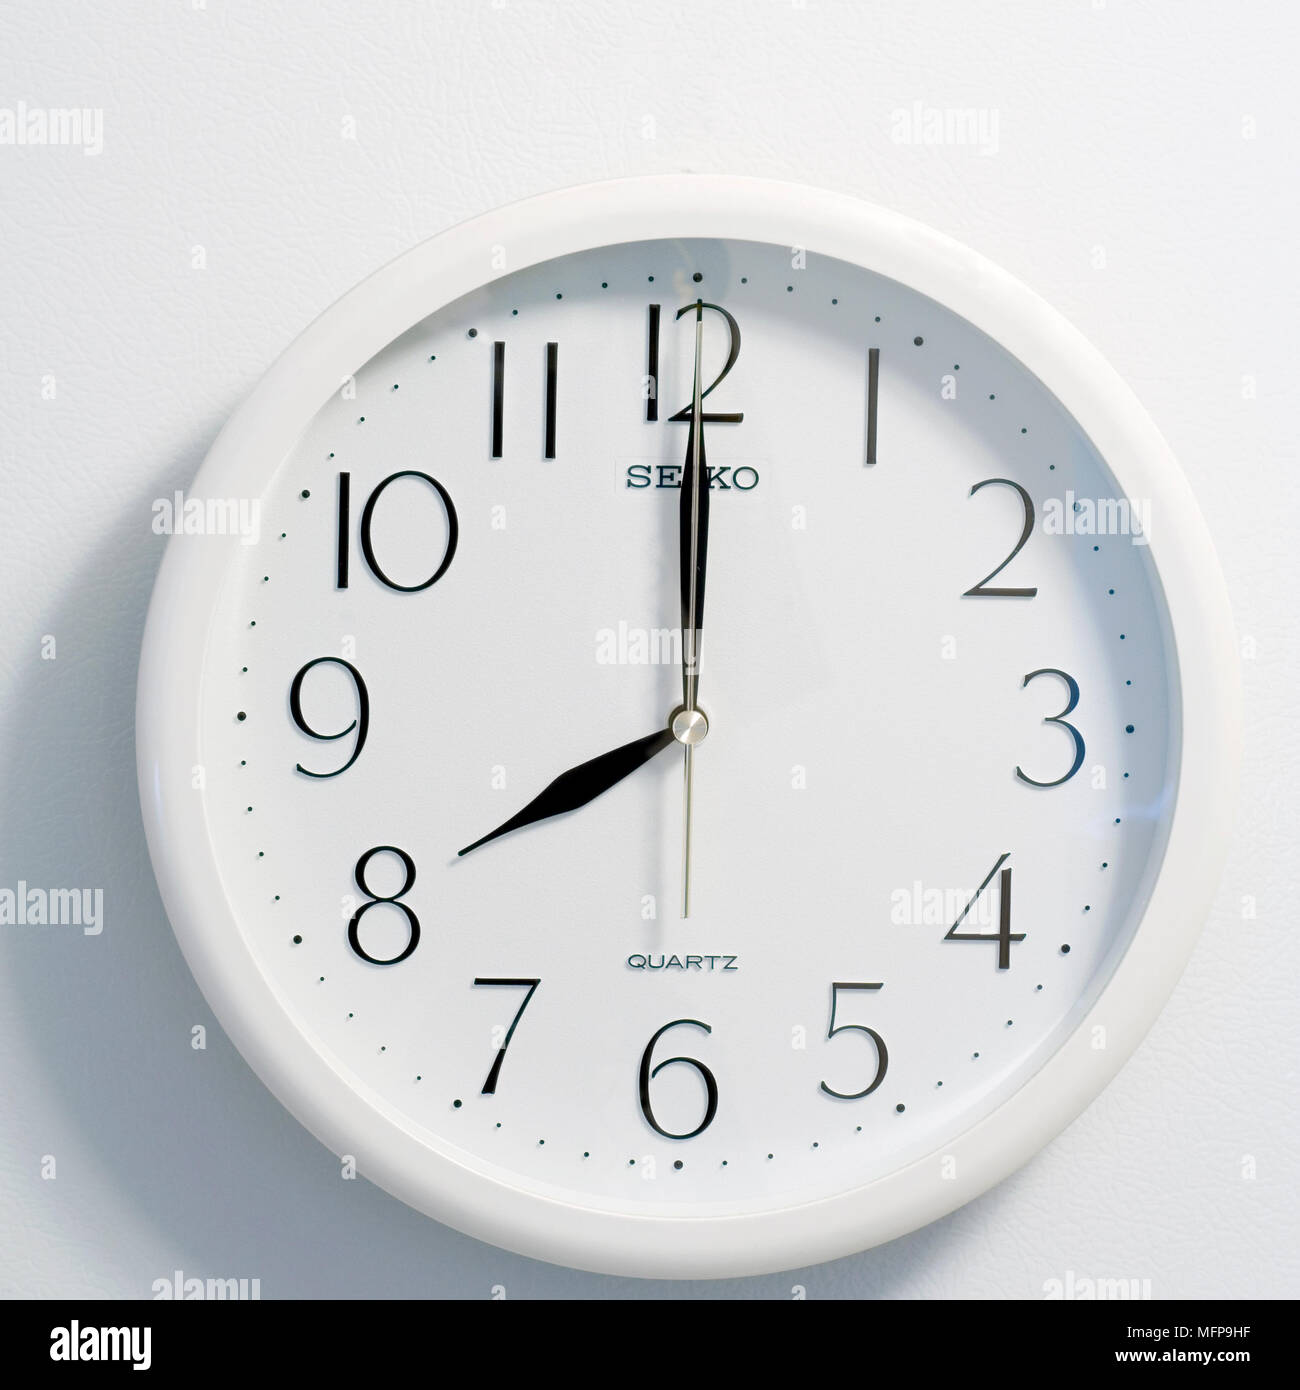 Nahaufnahme des Gesichts des modernen clock Stil, runde weiße und schwarze Zifferblatt zur Zeit acht Uhr Stockfoto